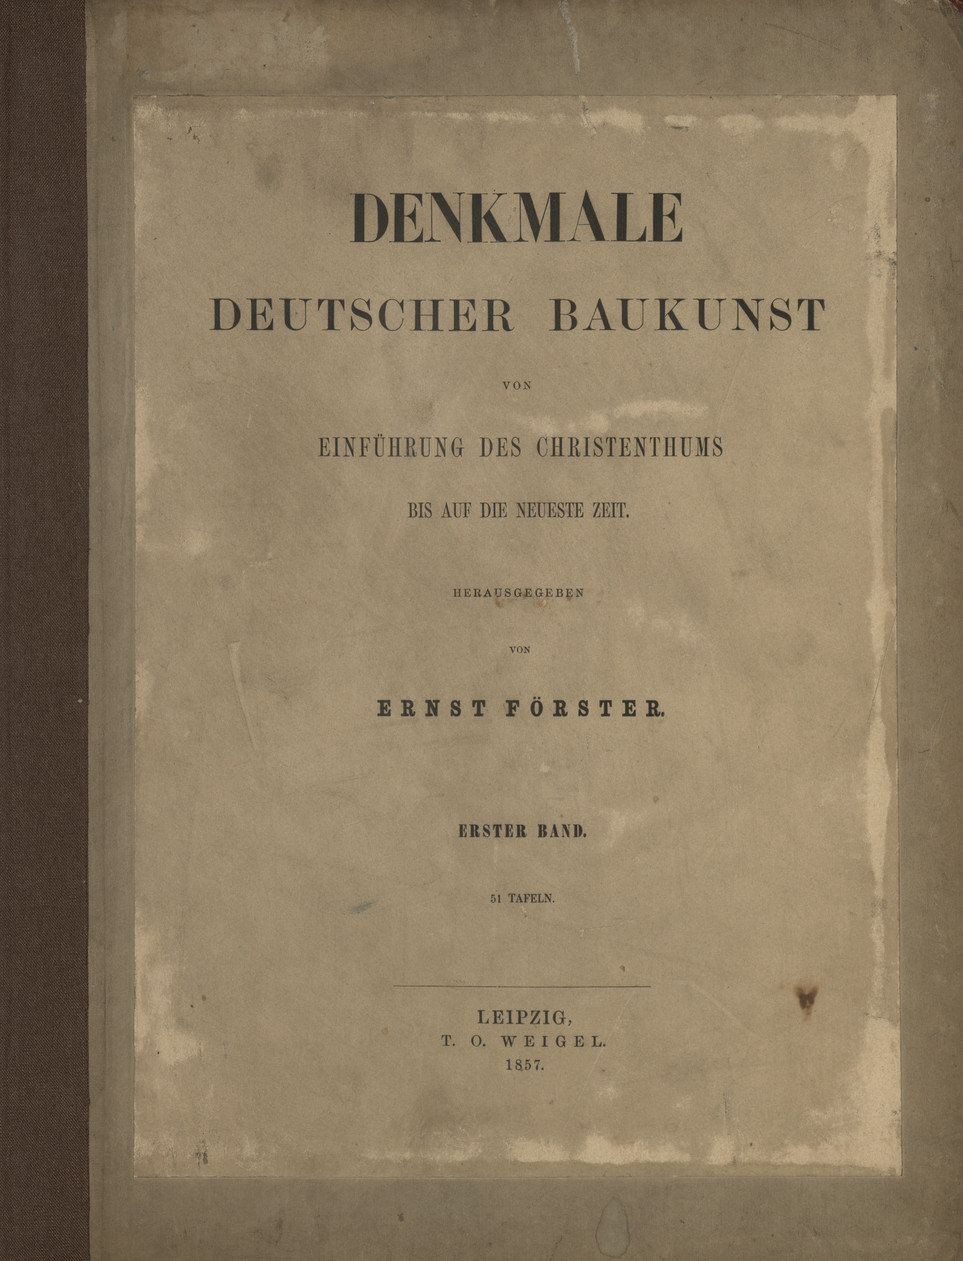 Denkmale deutscher Baukunst von Einführung des Christenthums : bis auf die Neueste Zeit. Bd. 1